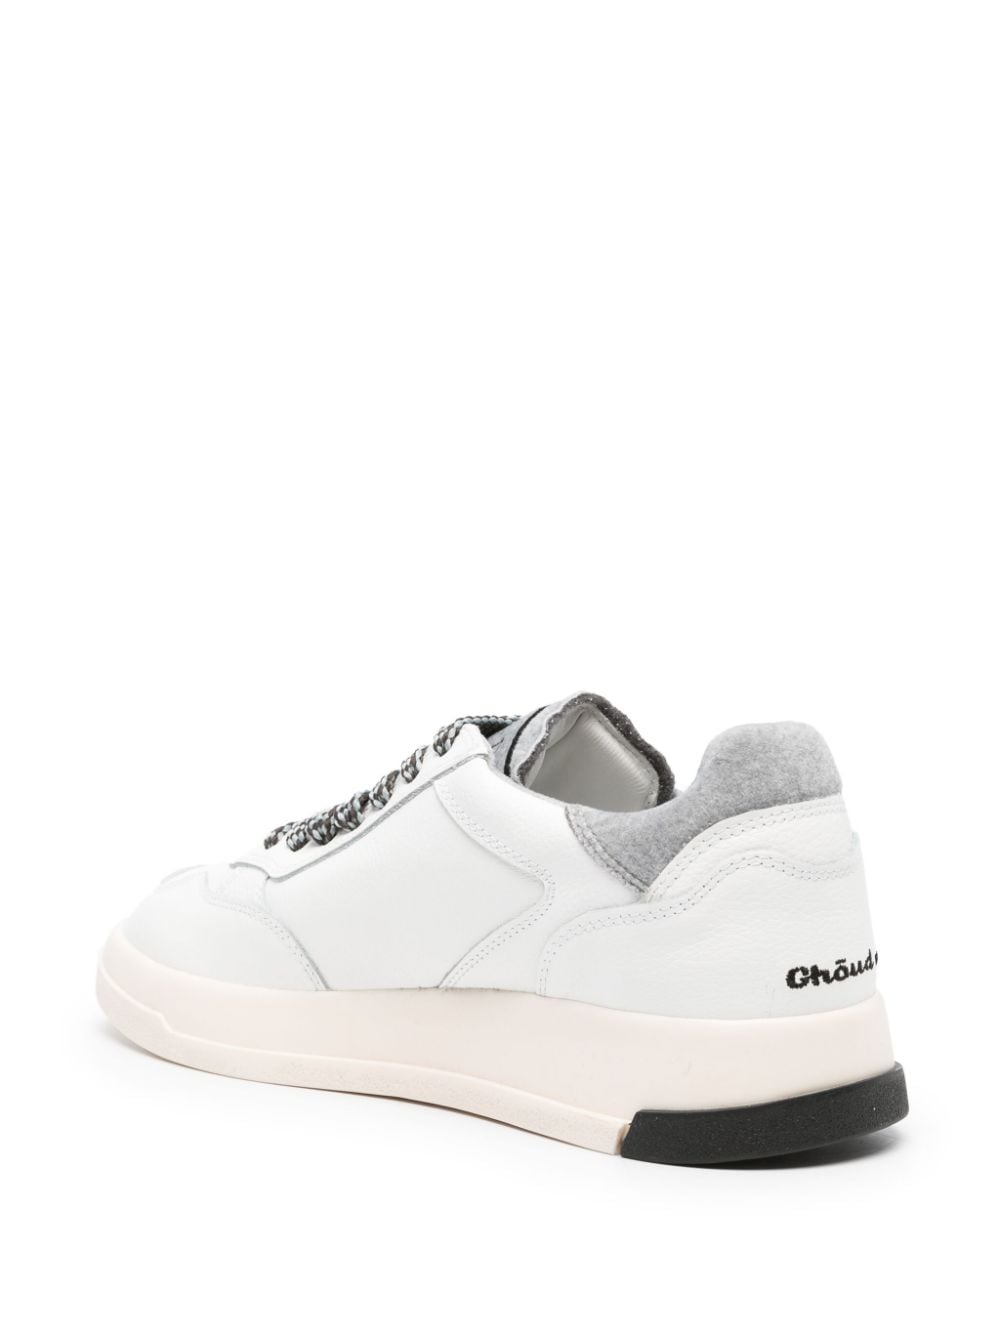 Ghoud Sneakers White